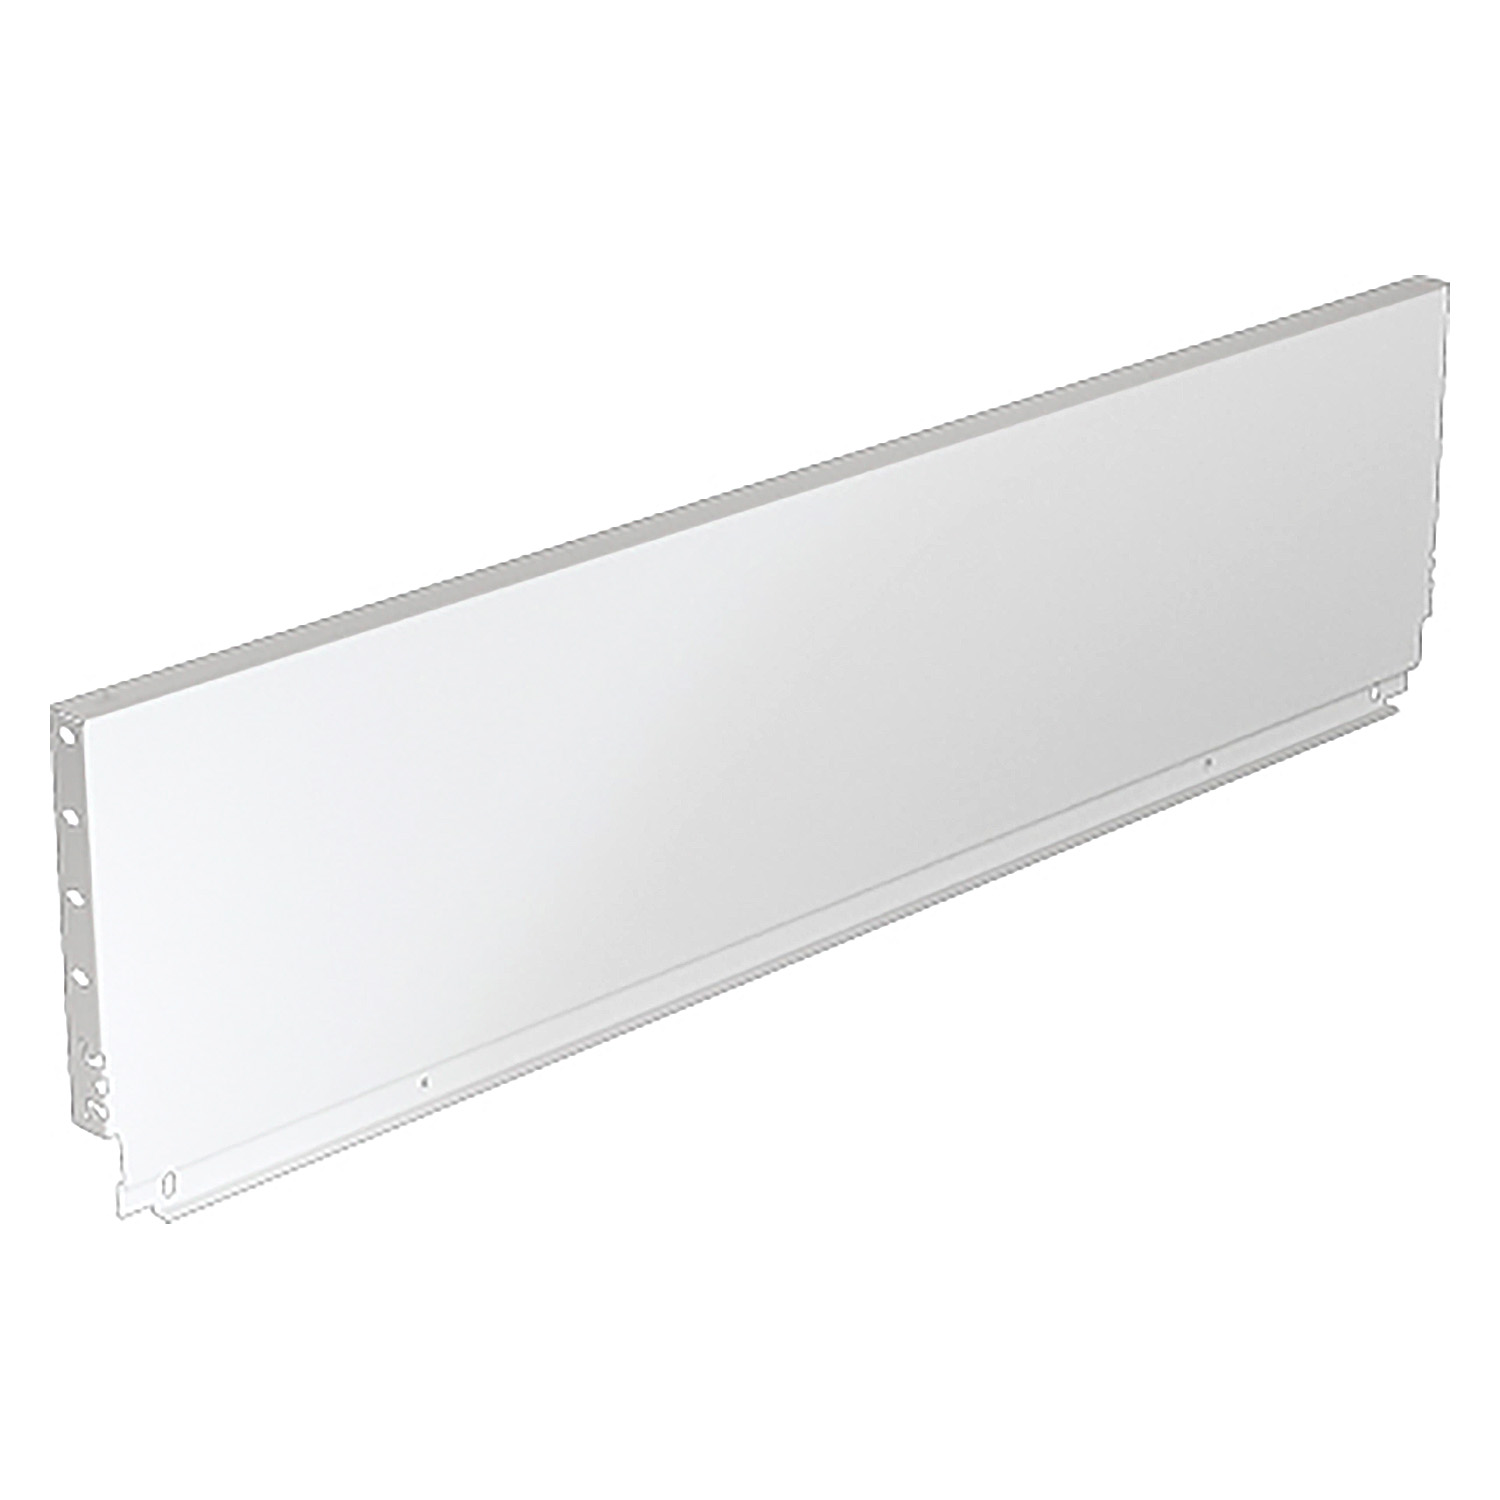 HETTICH Stahlrückwand ArciTech, 218 x 450 mm, weiß, 9121616